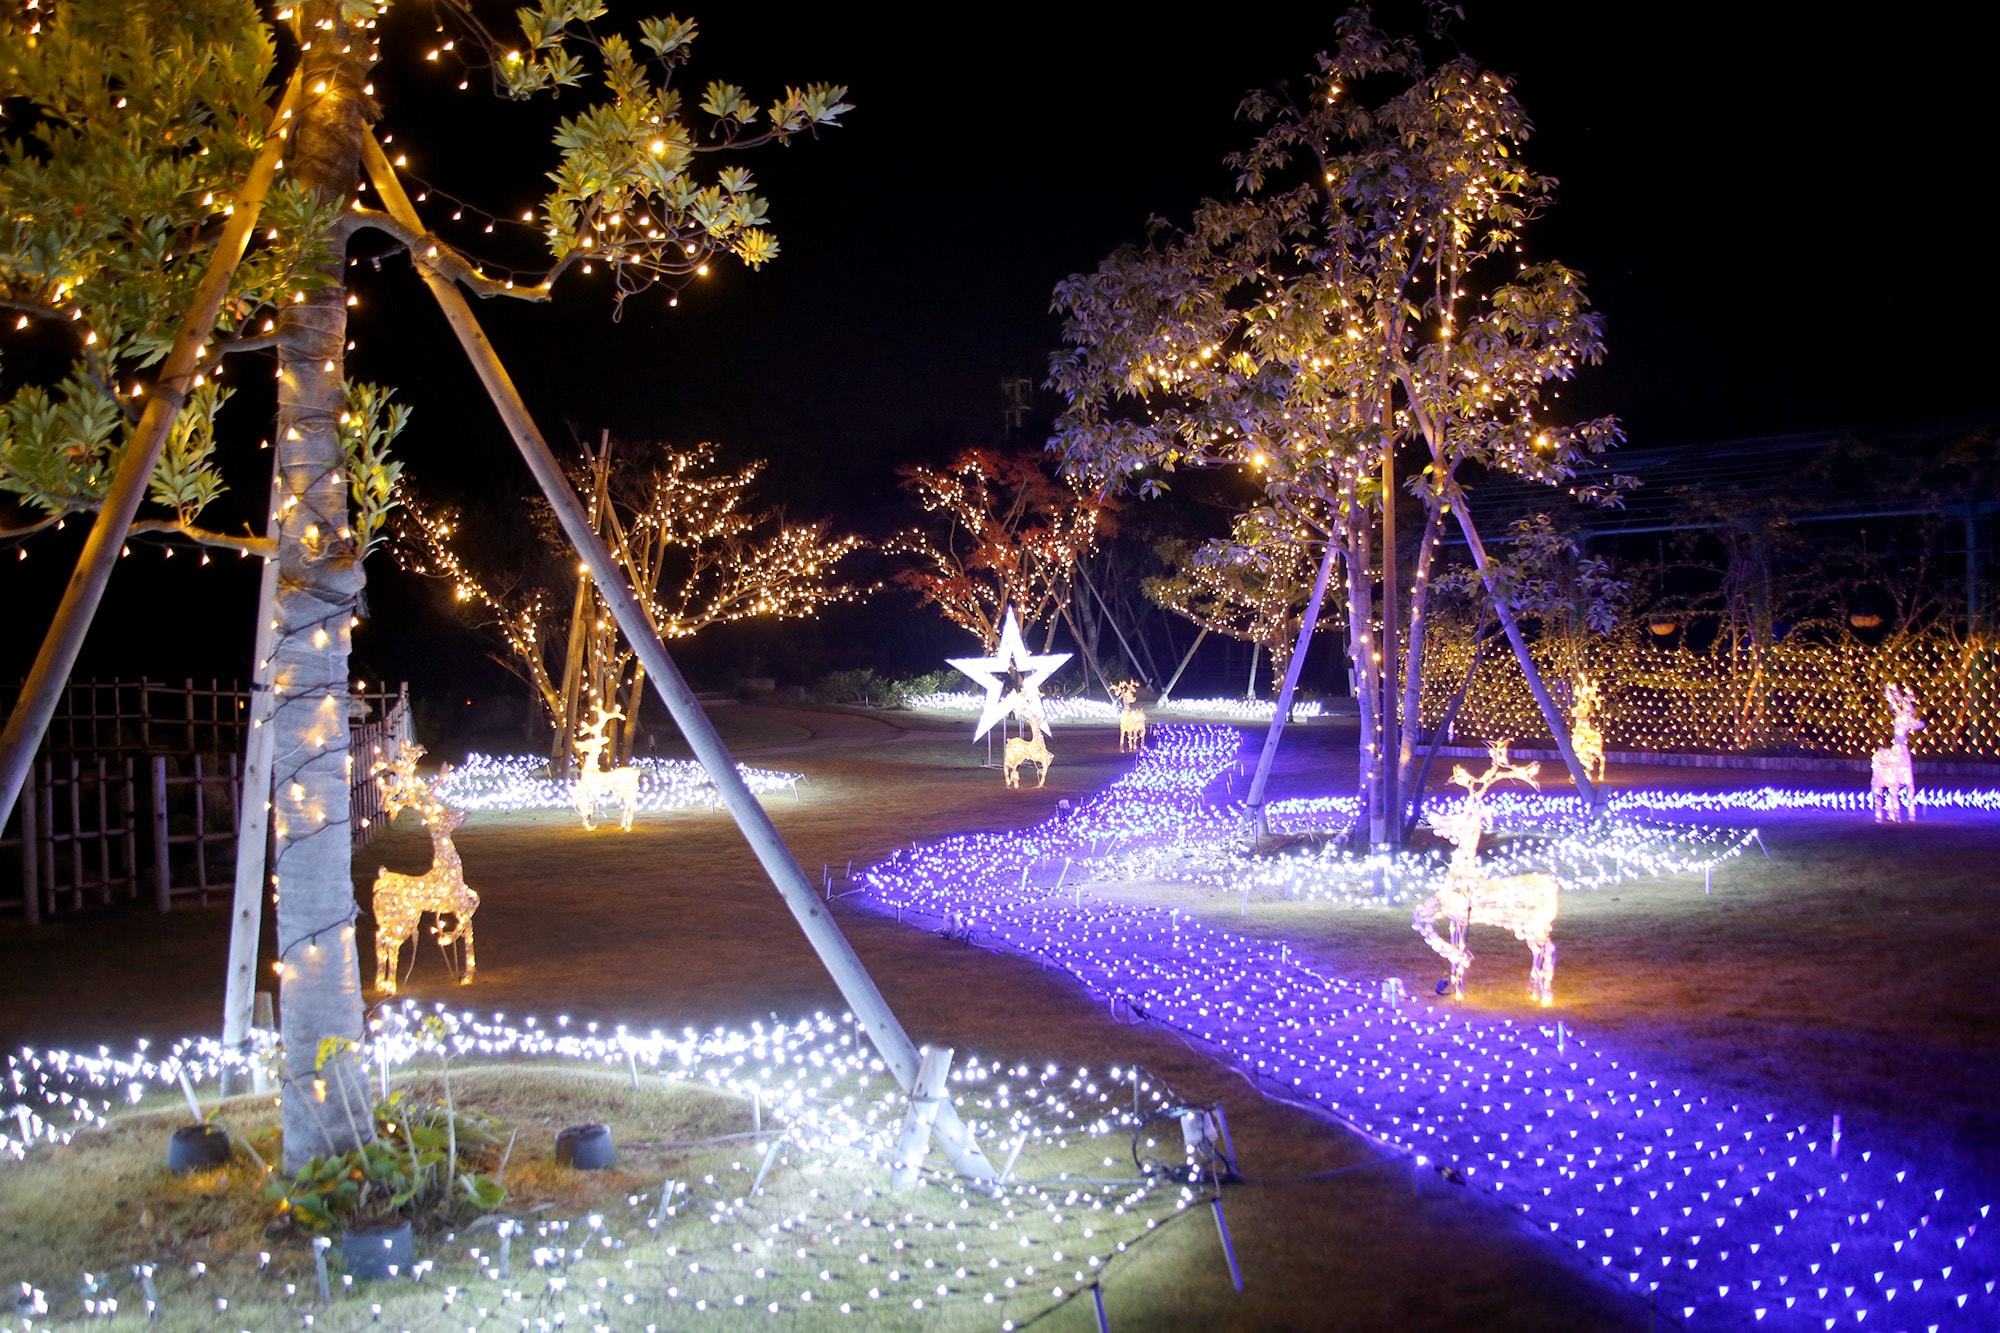 Christmas illumination (2F garden)